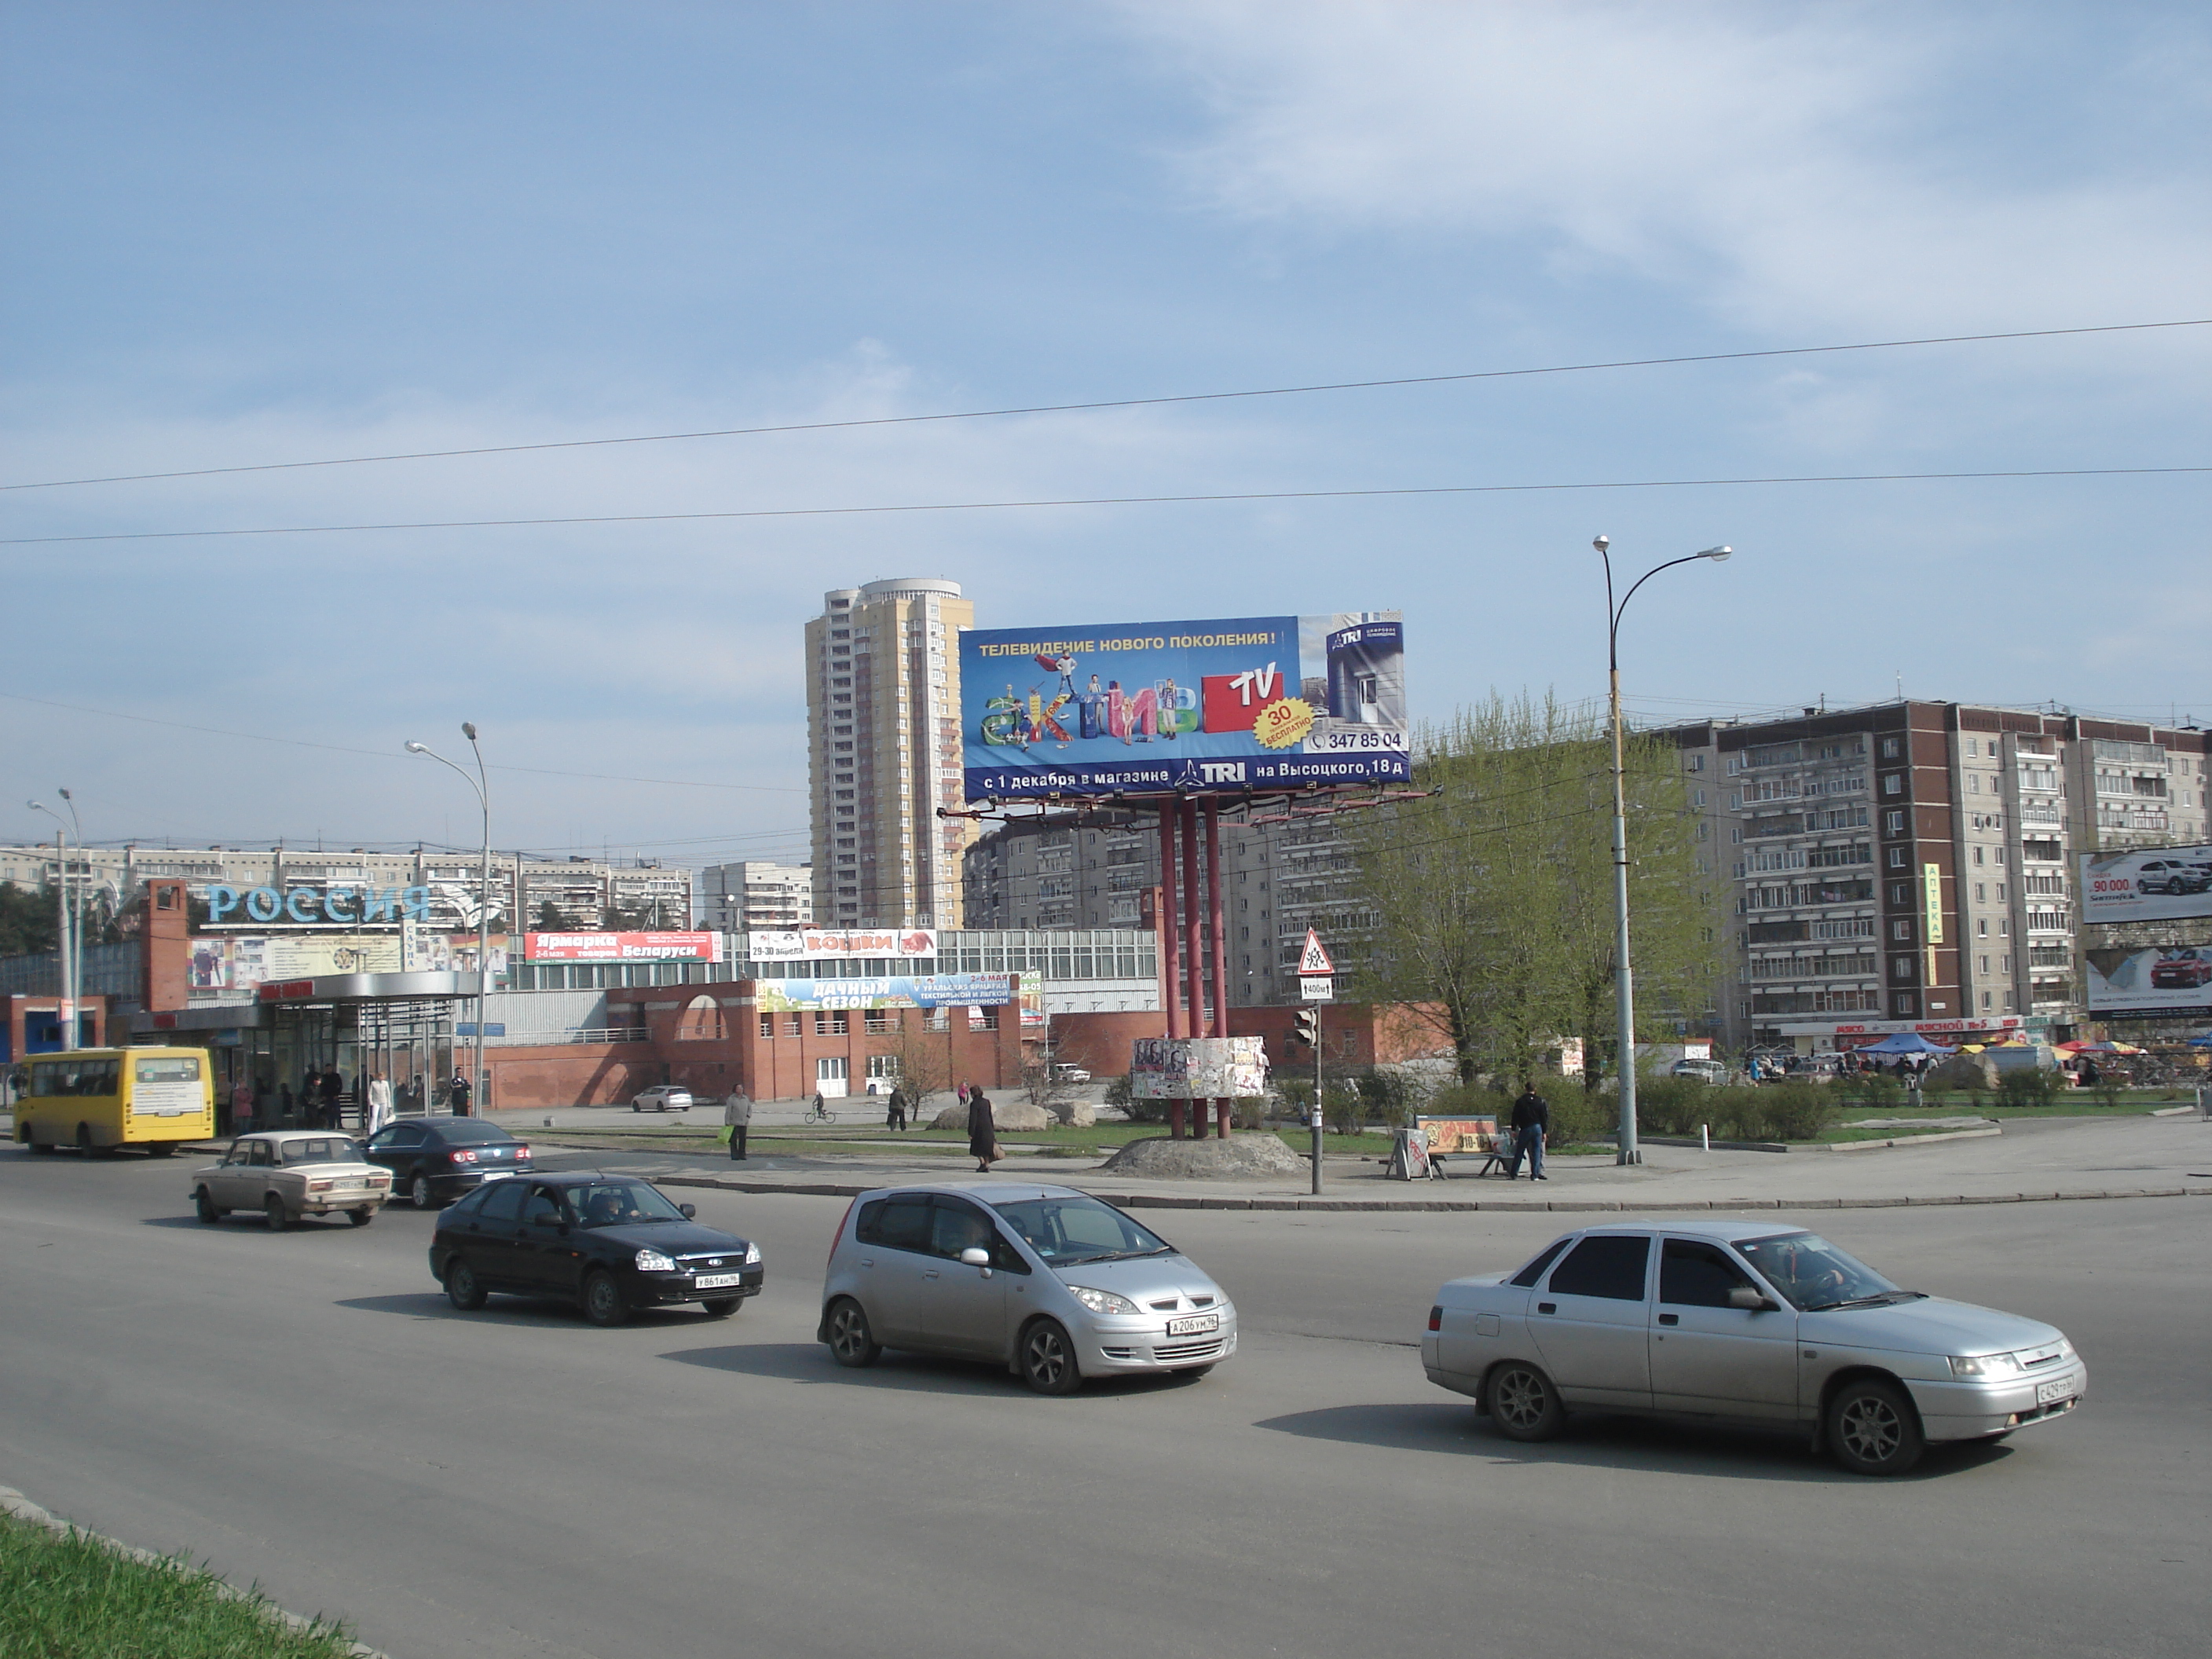 Шлюхи В Екатеринбурге Жби Район